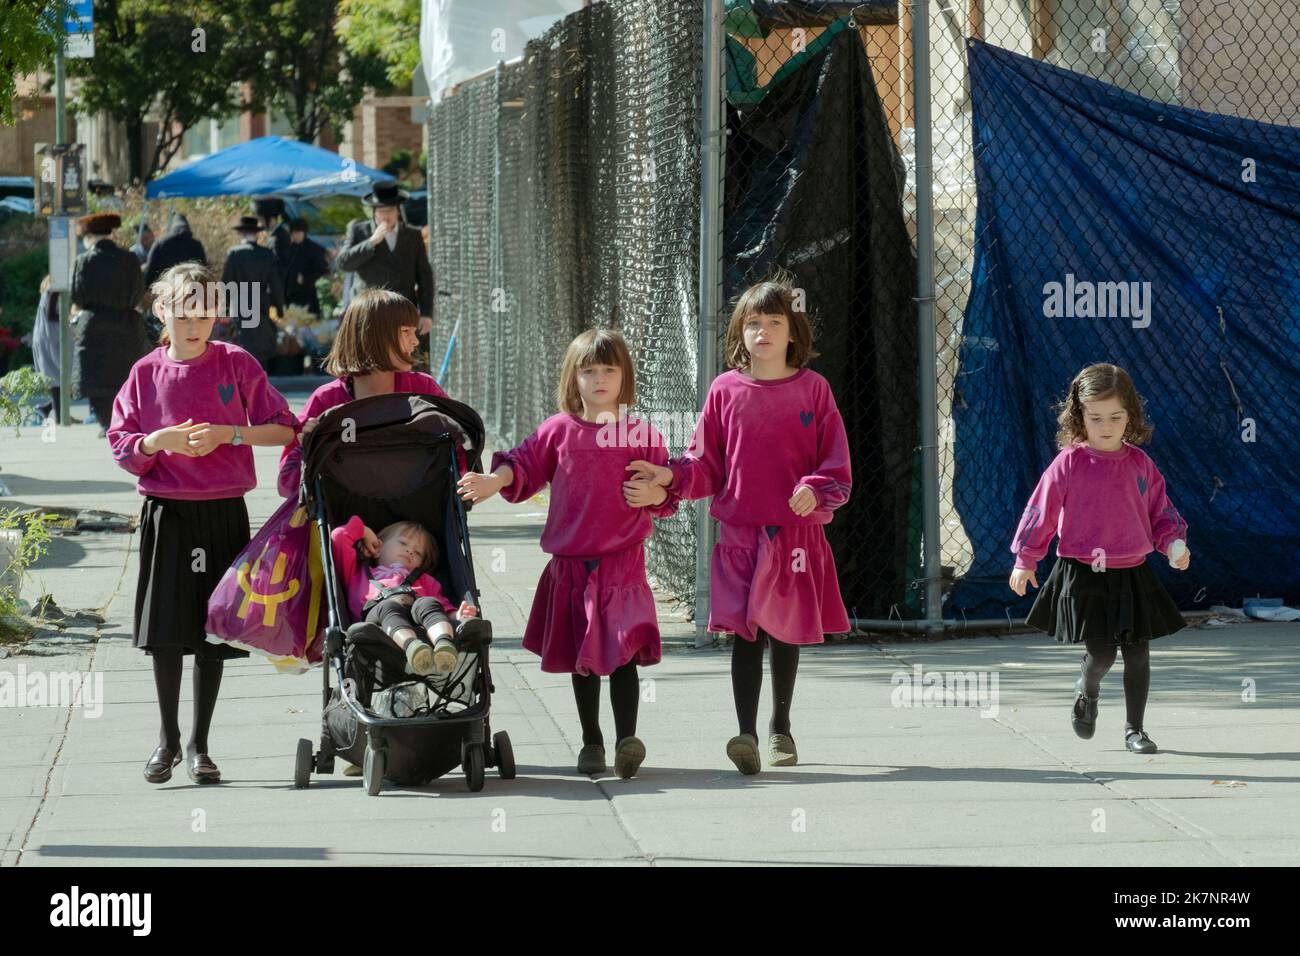 6 frères et sœurs juifs vêtus de la même façon marcher sur Bedford Avenue à Williamsburg, Brooklyn, New York City pendant les vacances de Sukkos. Banque D'Images